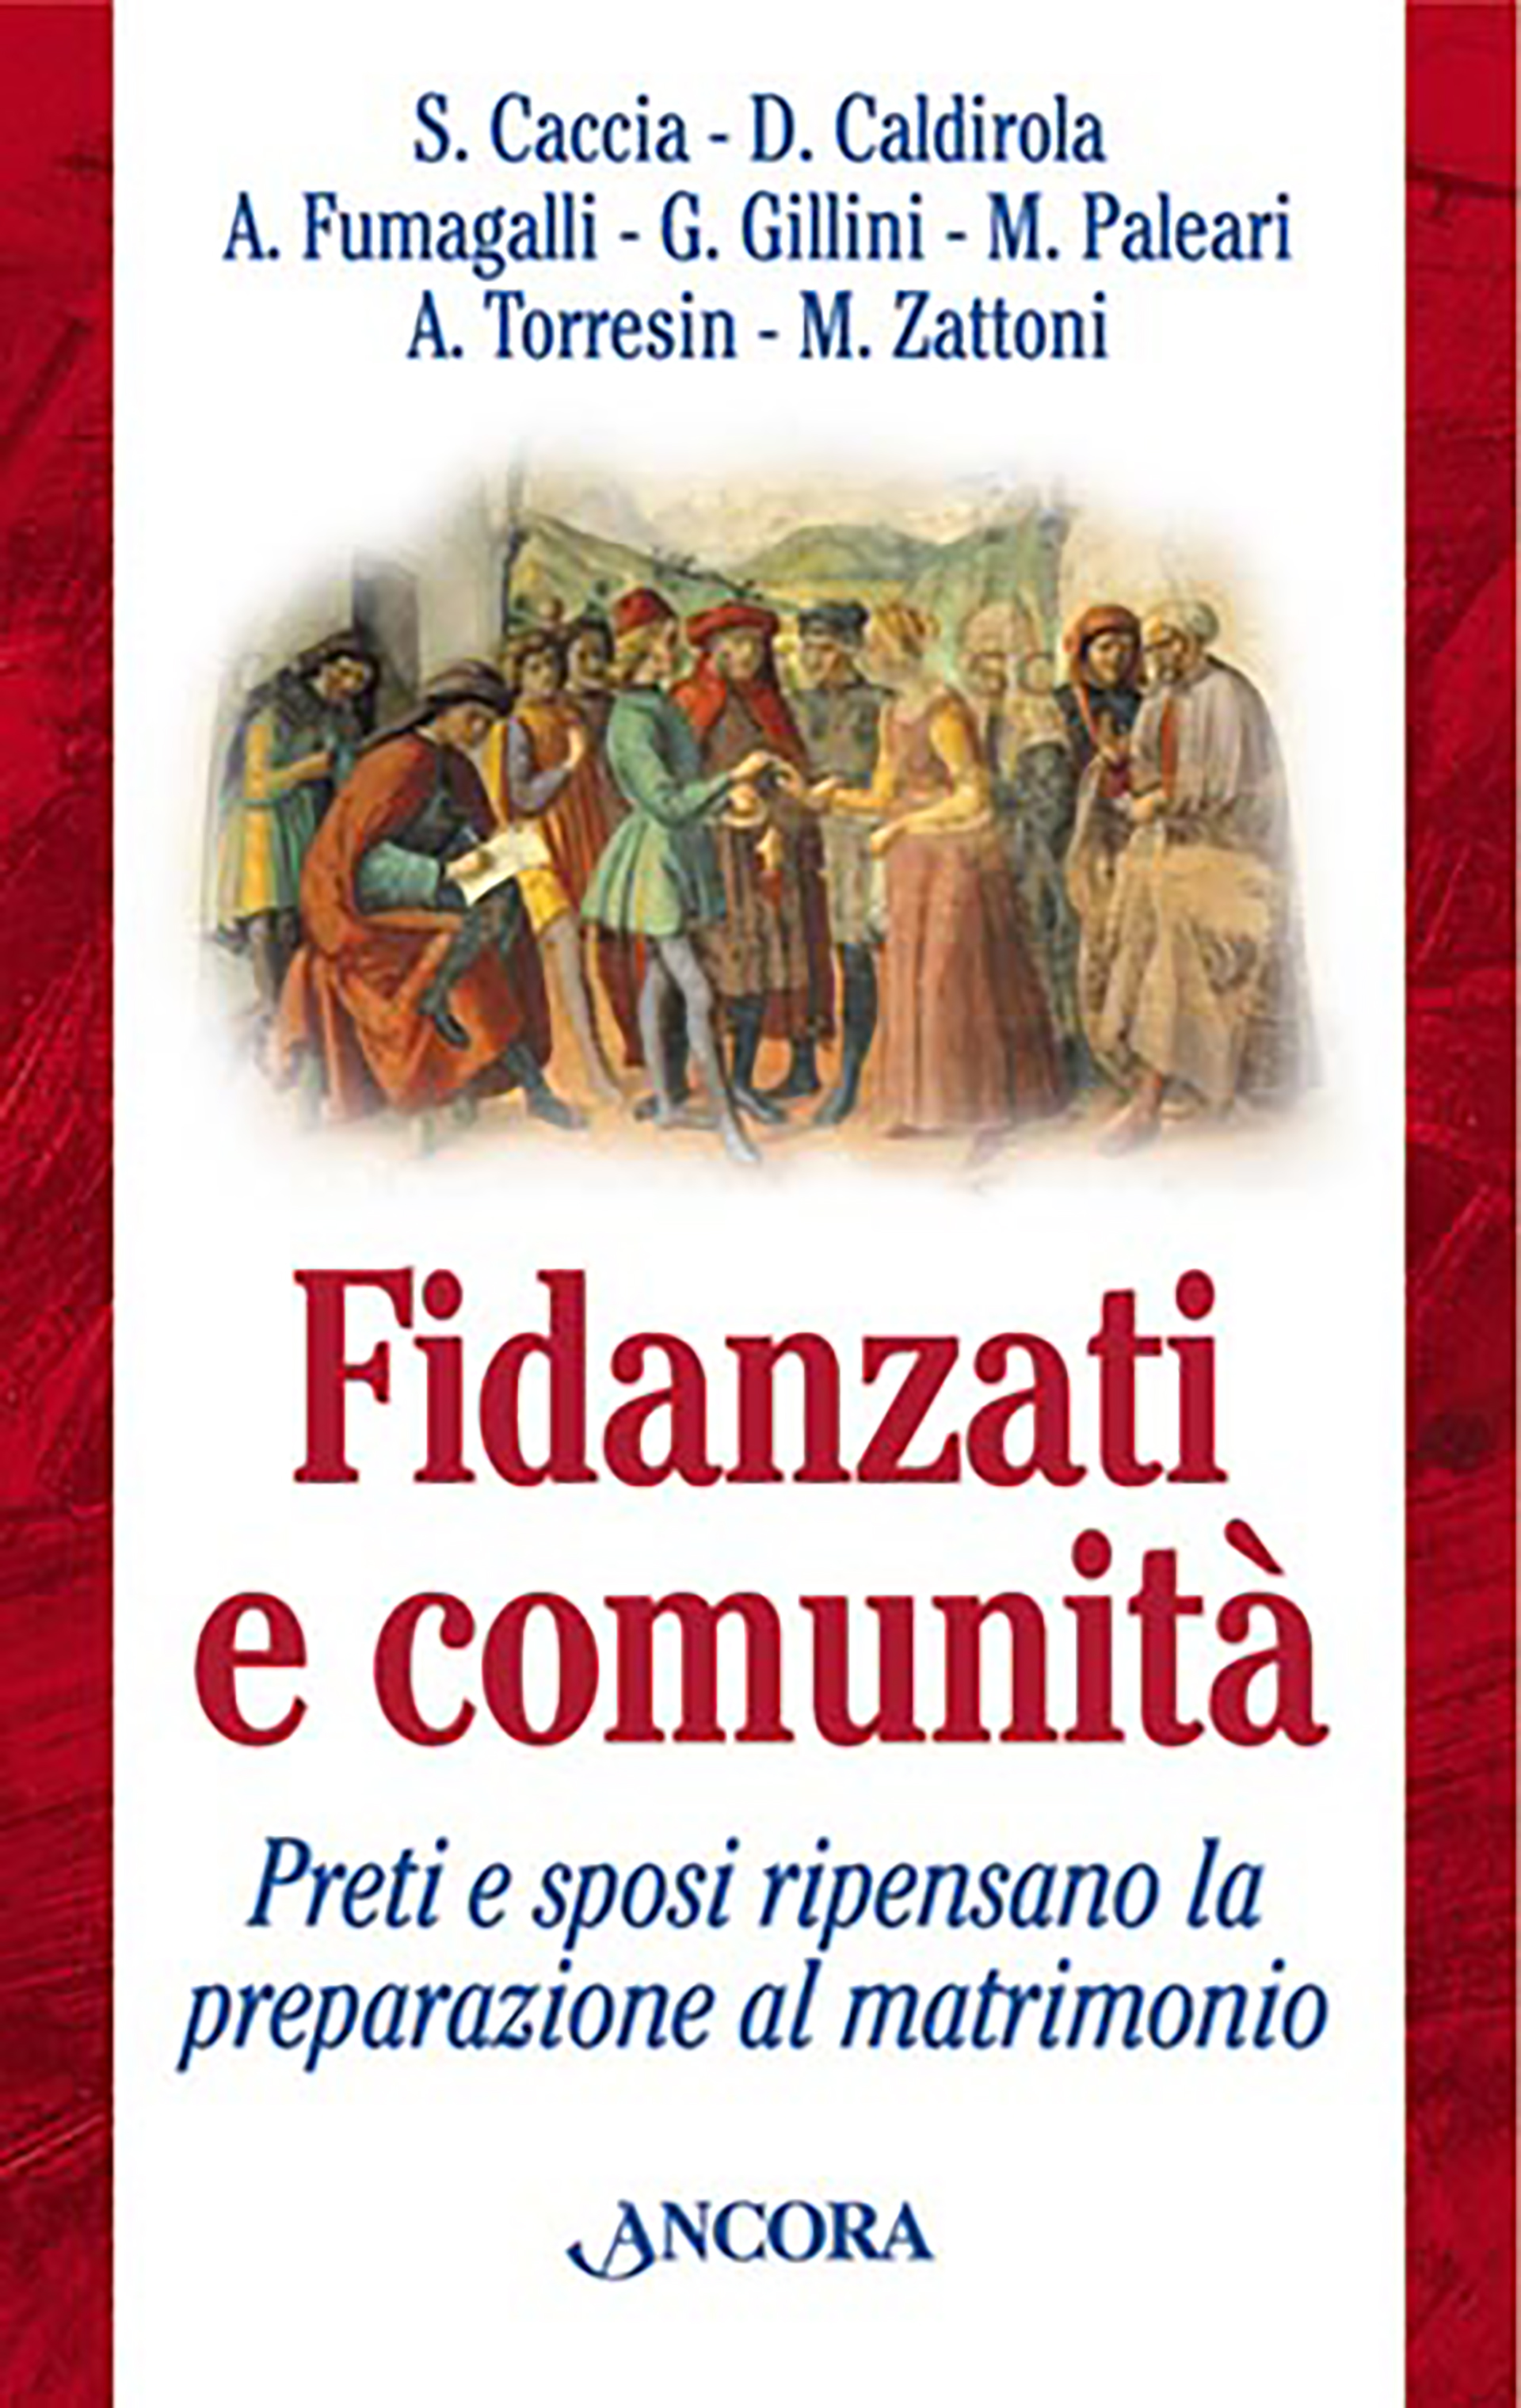 Fidanzati e comunità - Silvano Caccia, Davide Caldirola, Aristide Fumagalli  - Ancora - Libro Àncora Editrice